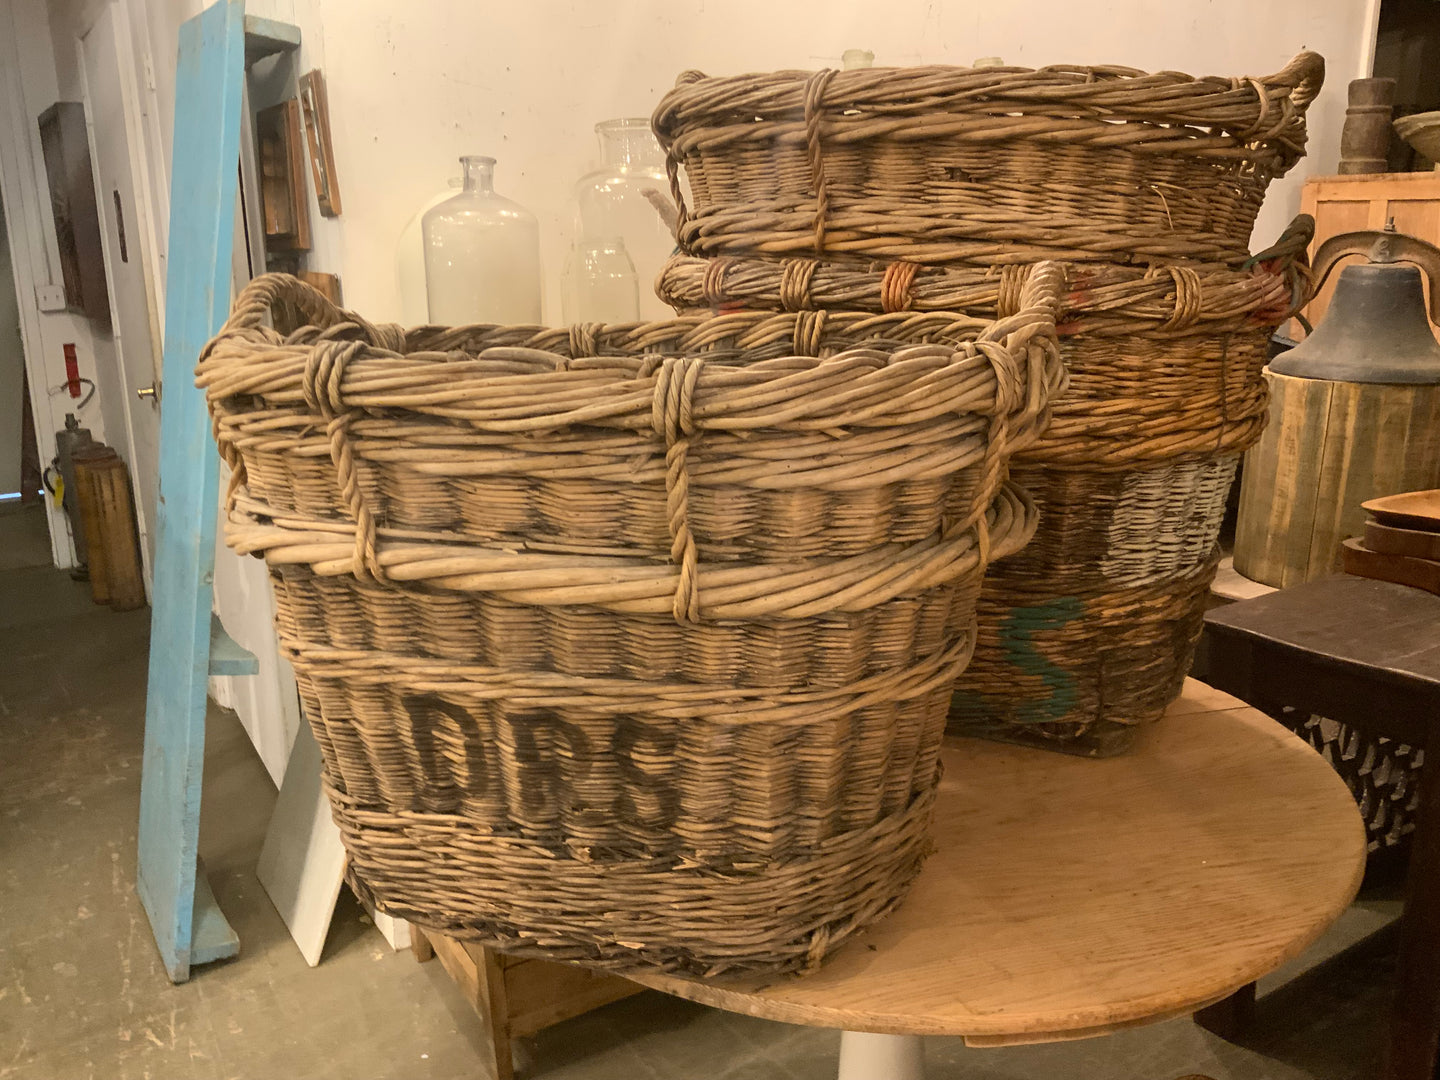 Antique European Wine Harvest Baskets